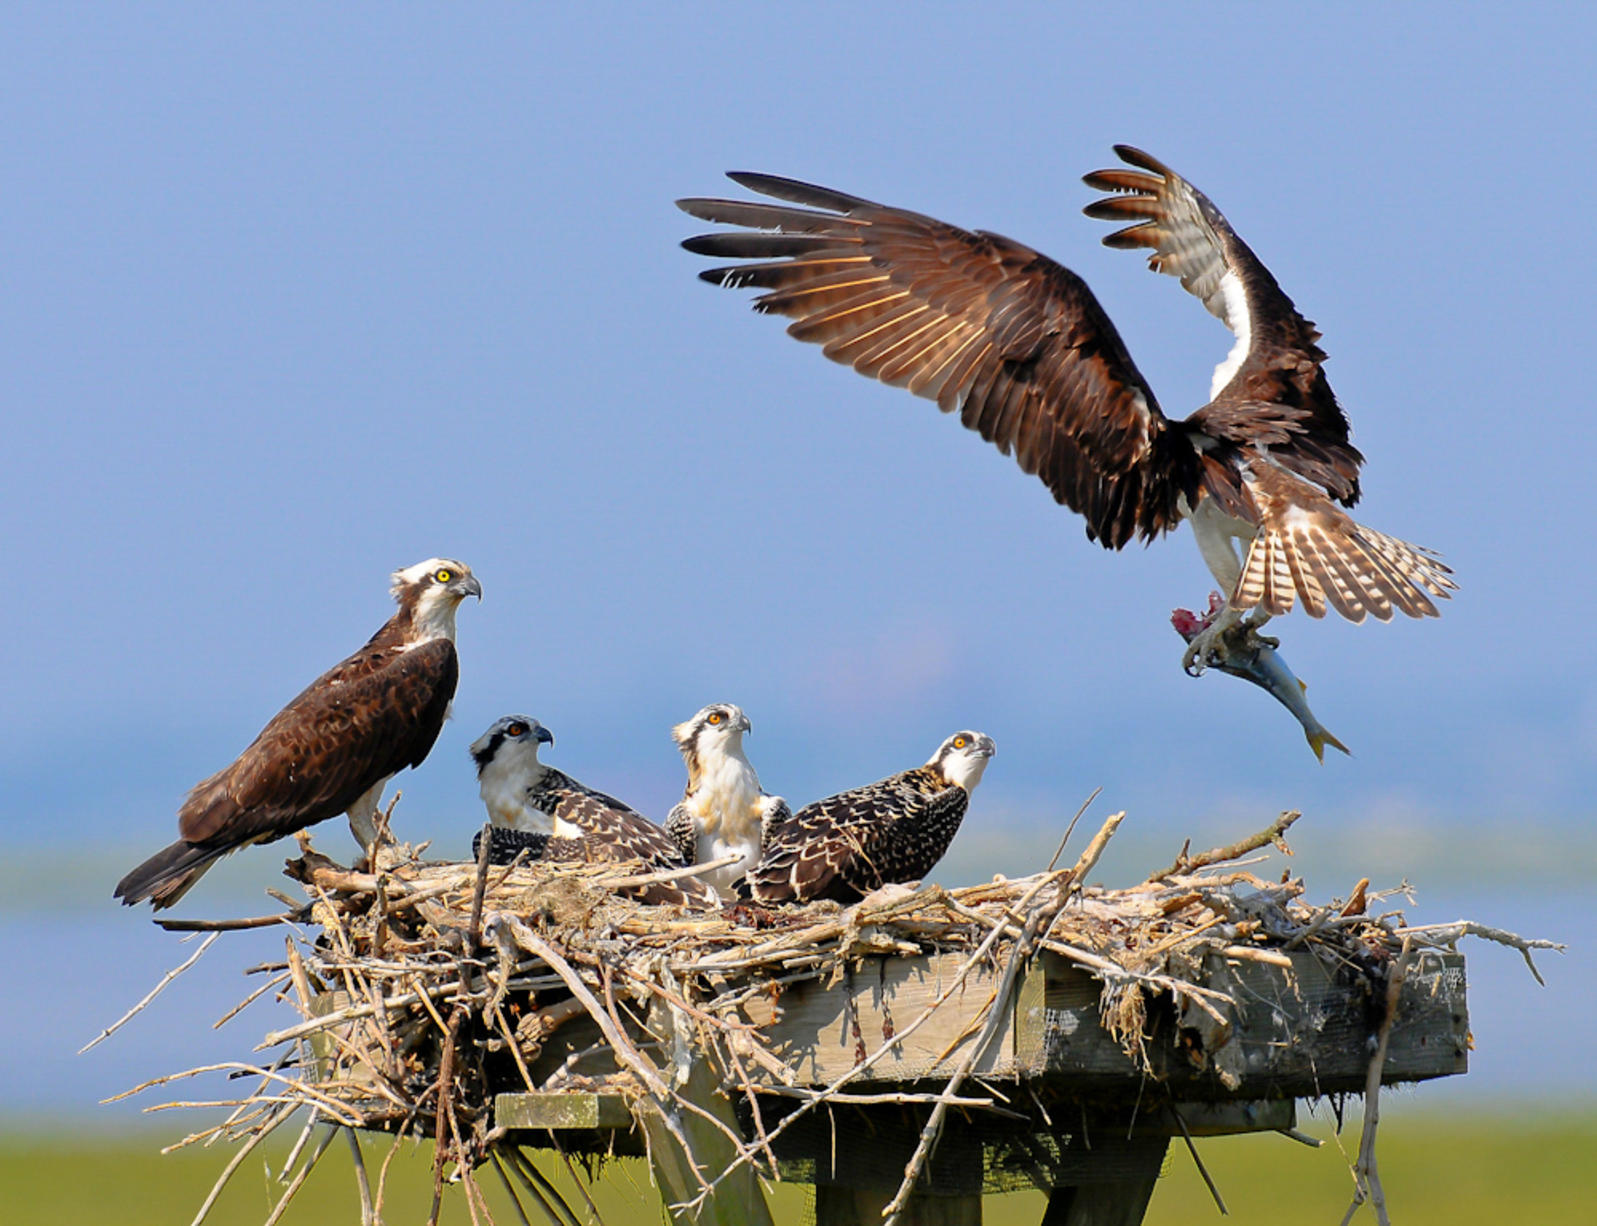 Osprey coj prey rau chicks